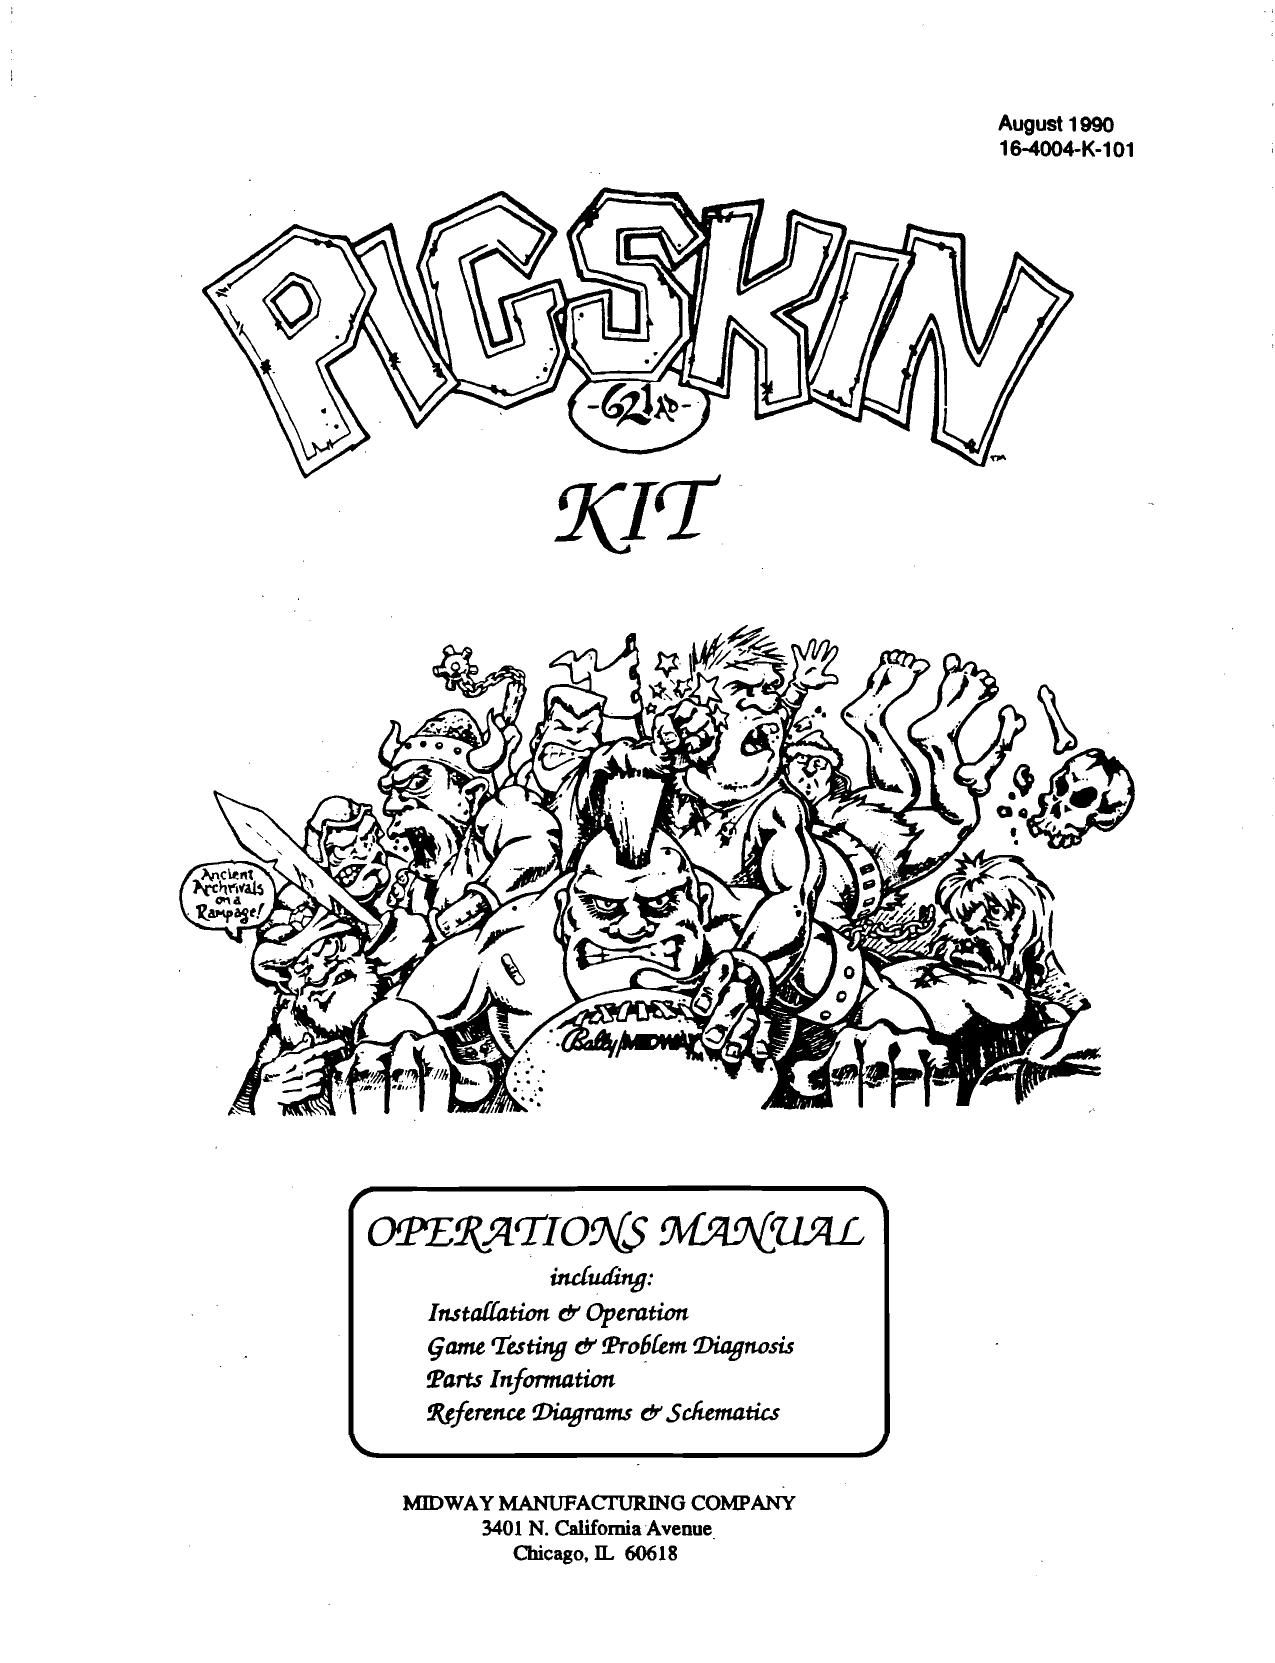 Pig Skin Conversion Kit